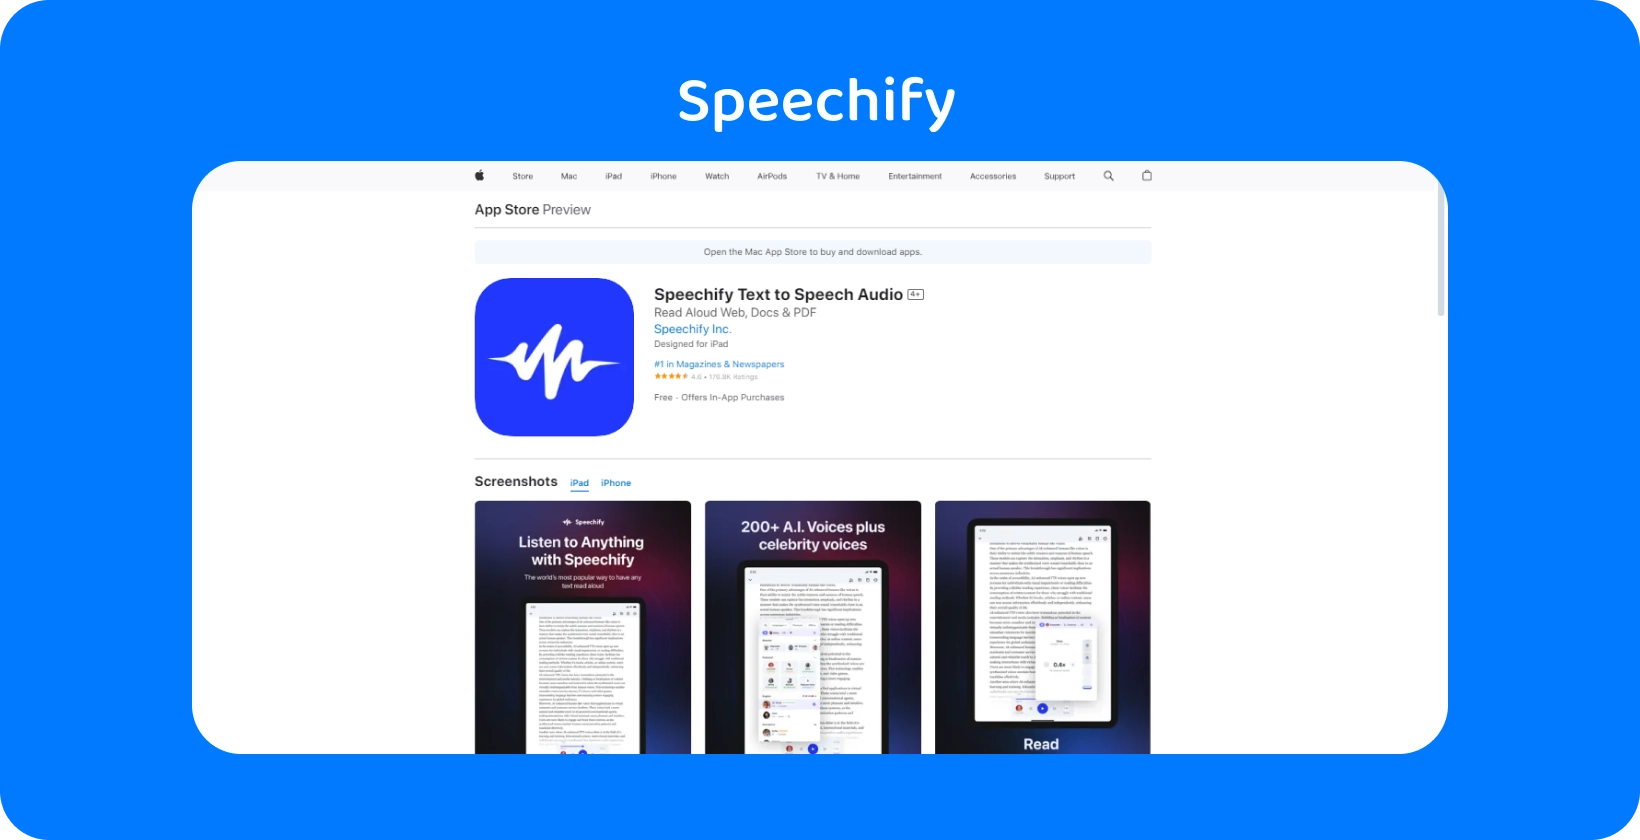 تطبيق Speechify في App Store ، يعرض ميزات لتحويل النص إلى كلام مع خيارات صوتية متنوعة.